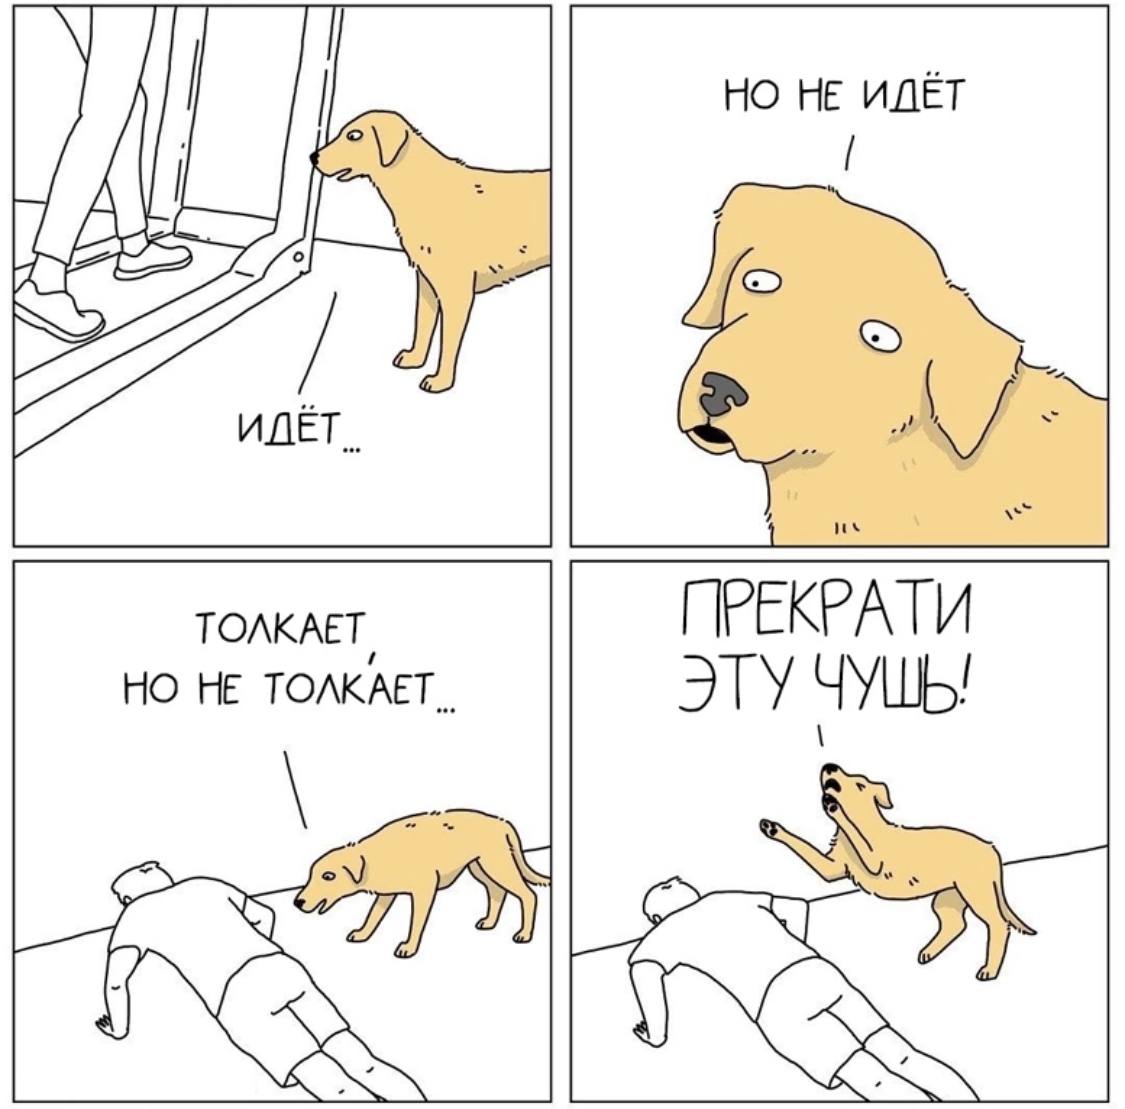 Смешные собаки мемы